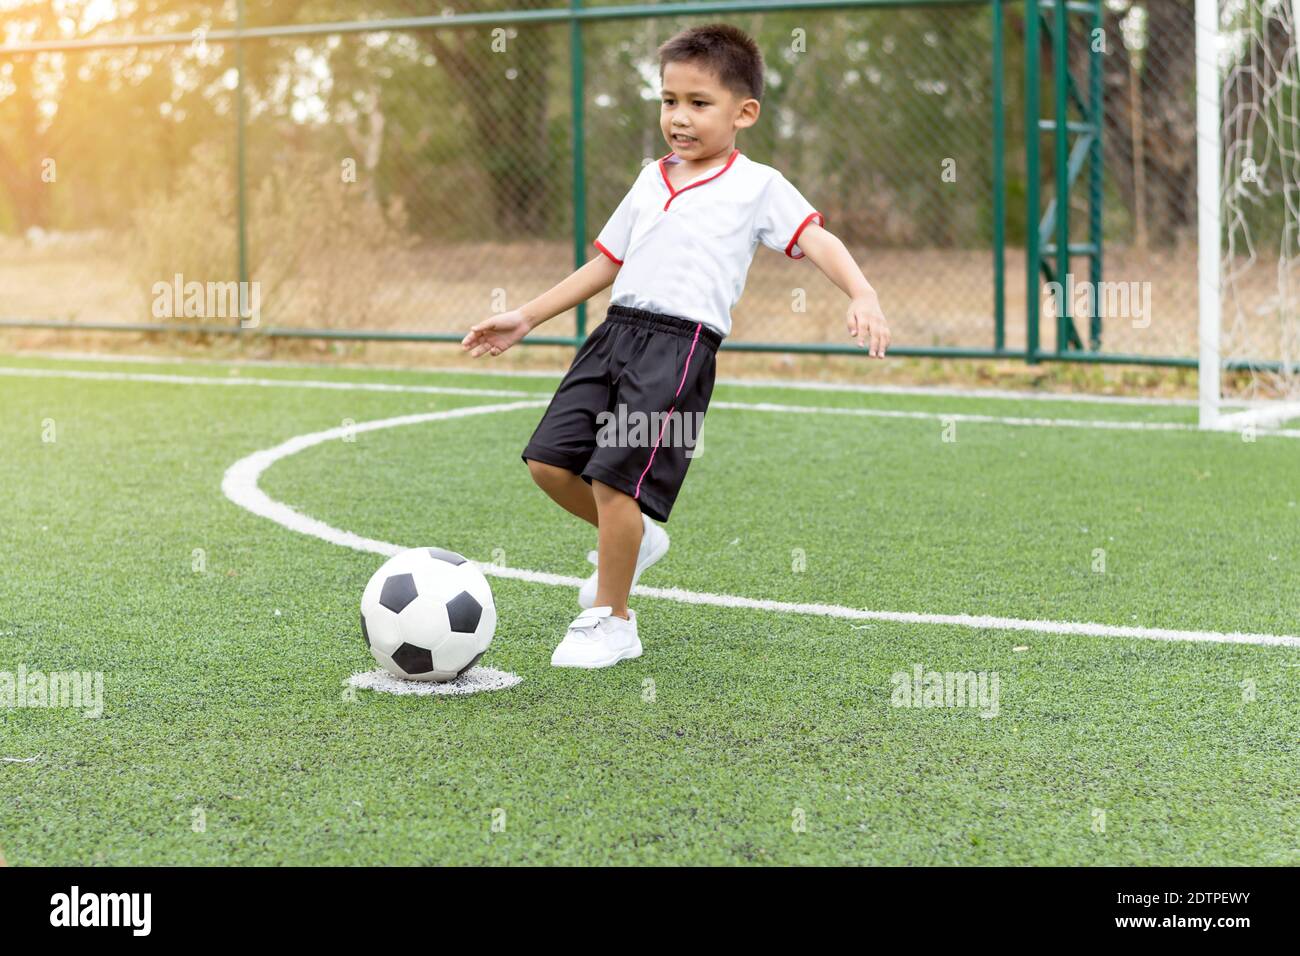 Le garçon jouait au football sur le terrain de football avec bonheur. Banque D'Images